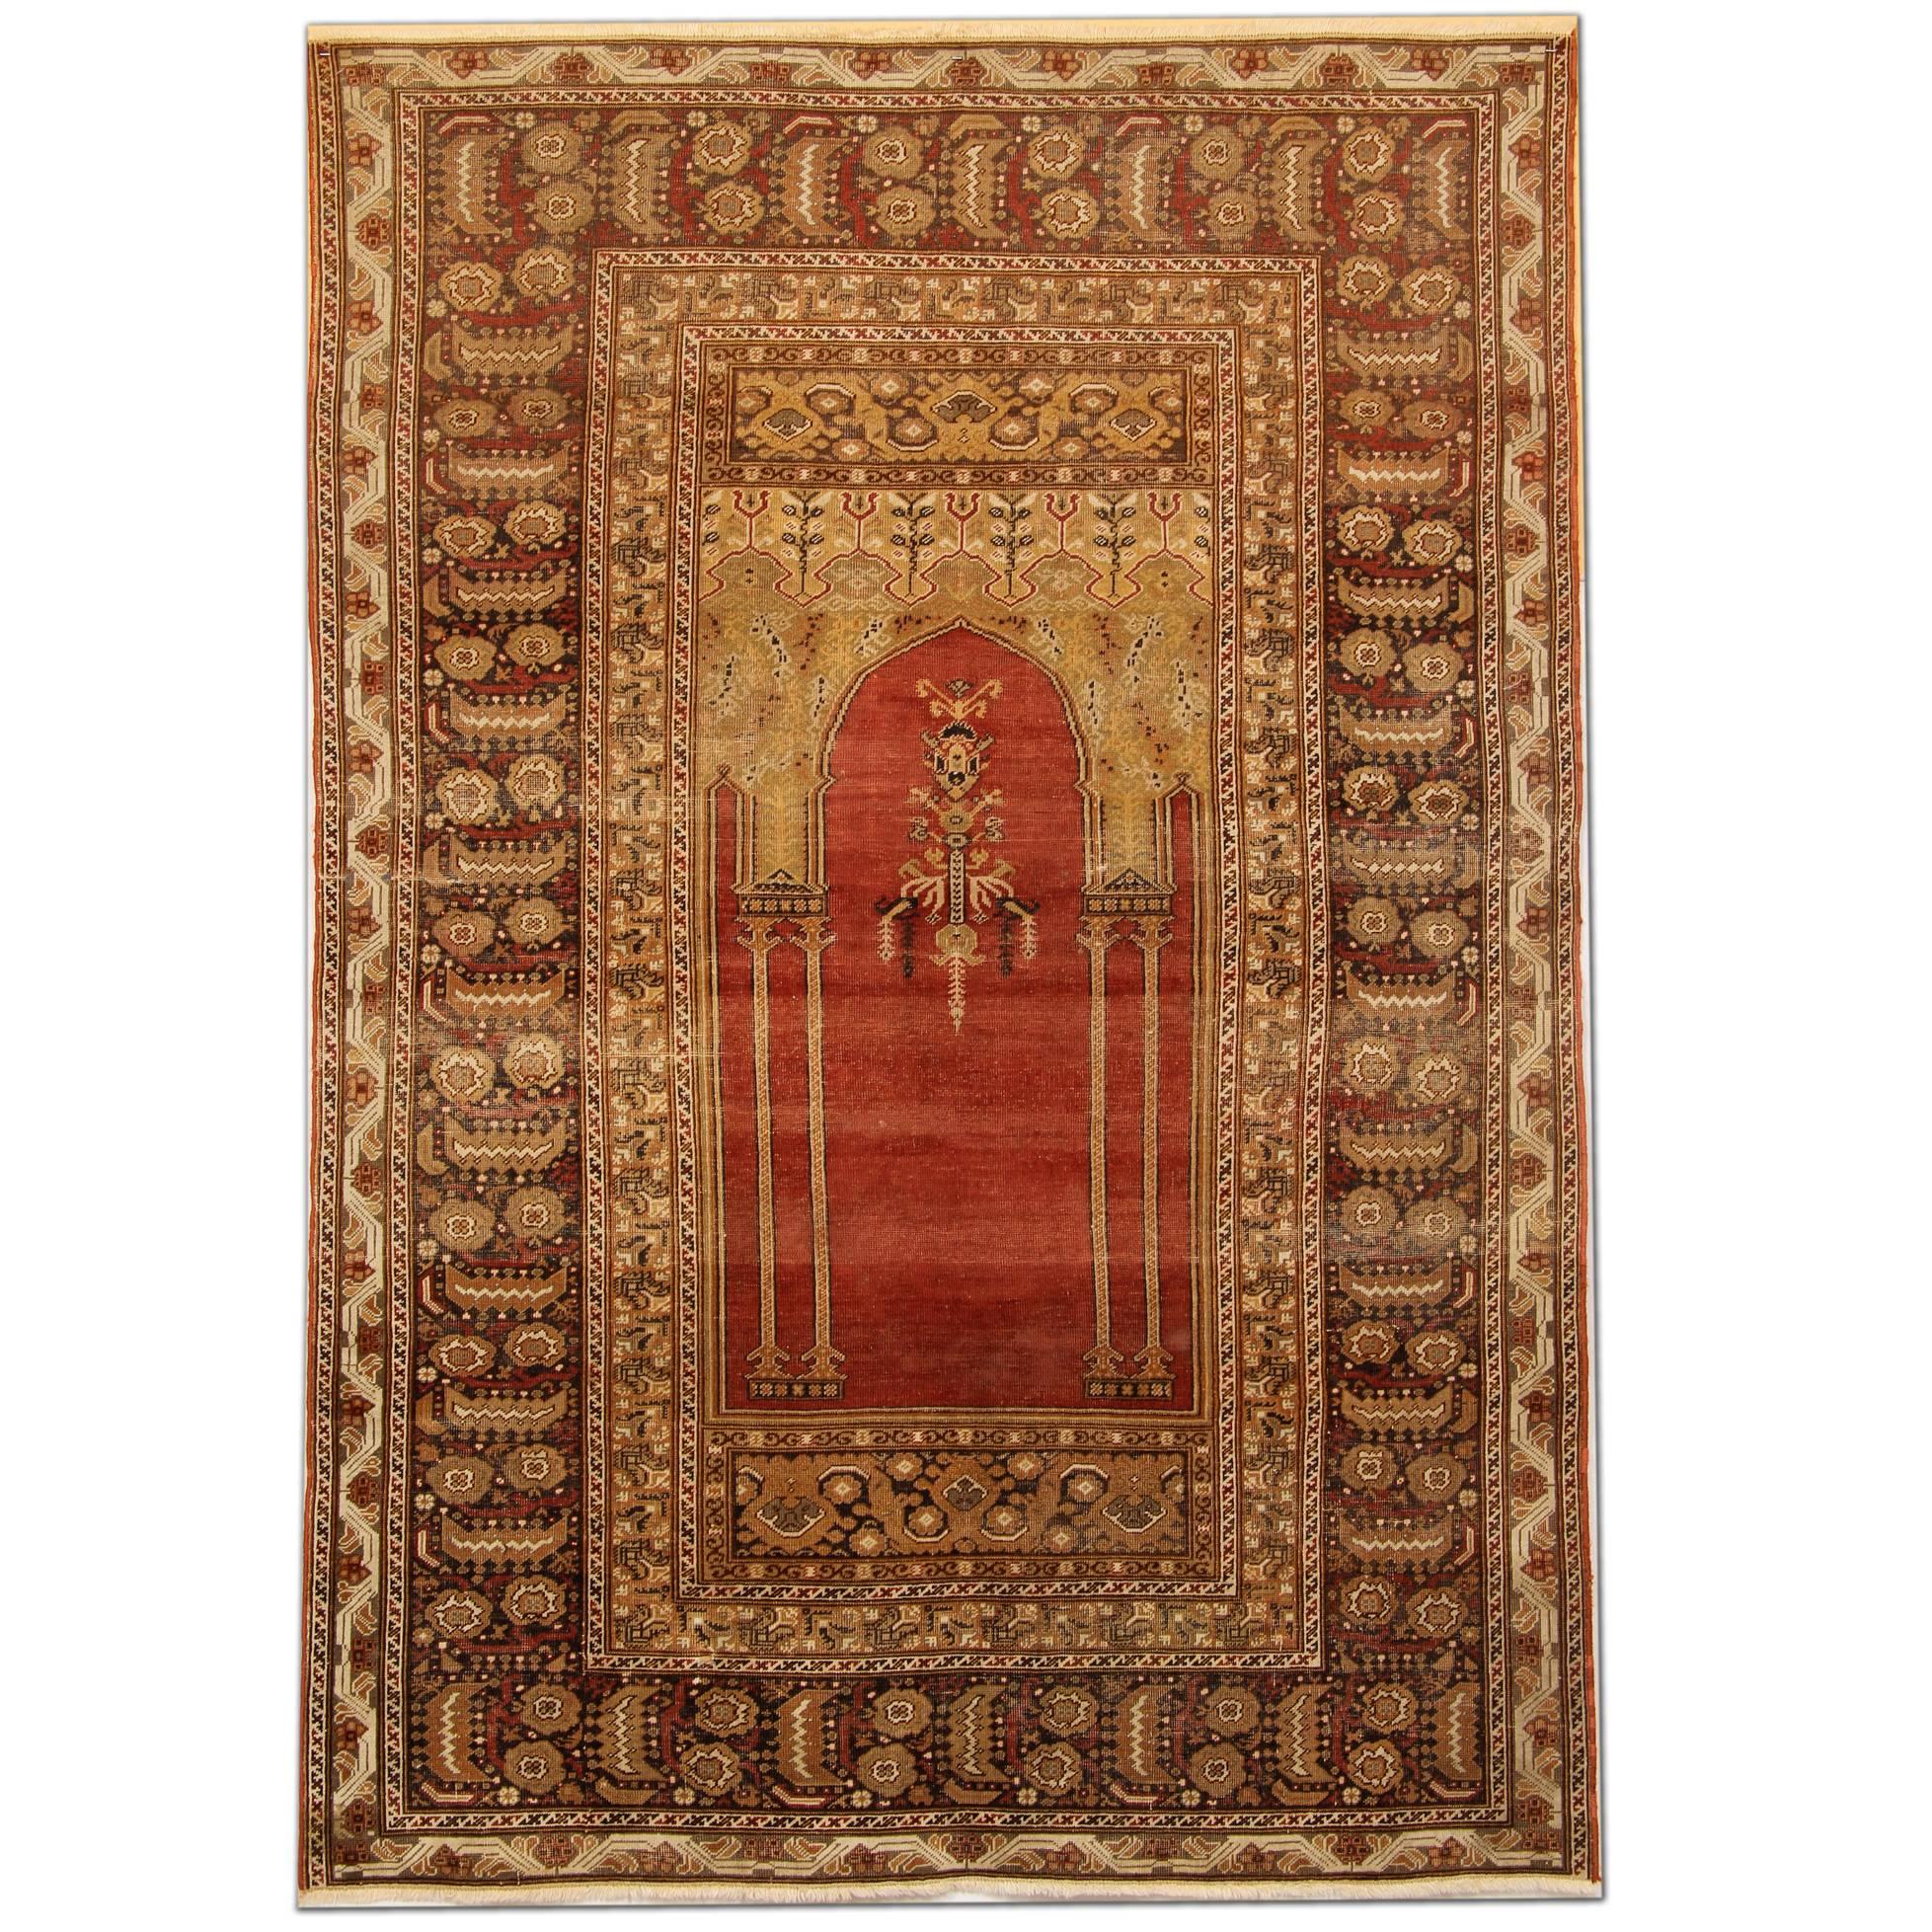 Tapis anciens rouges, tapis traditionnel turc, tapis de salon Mihrabi en vente